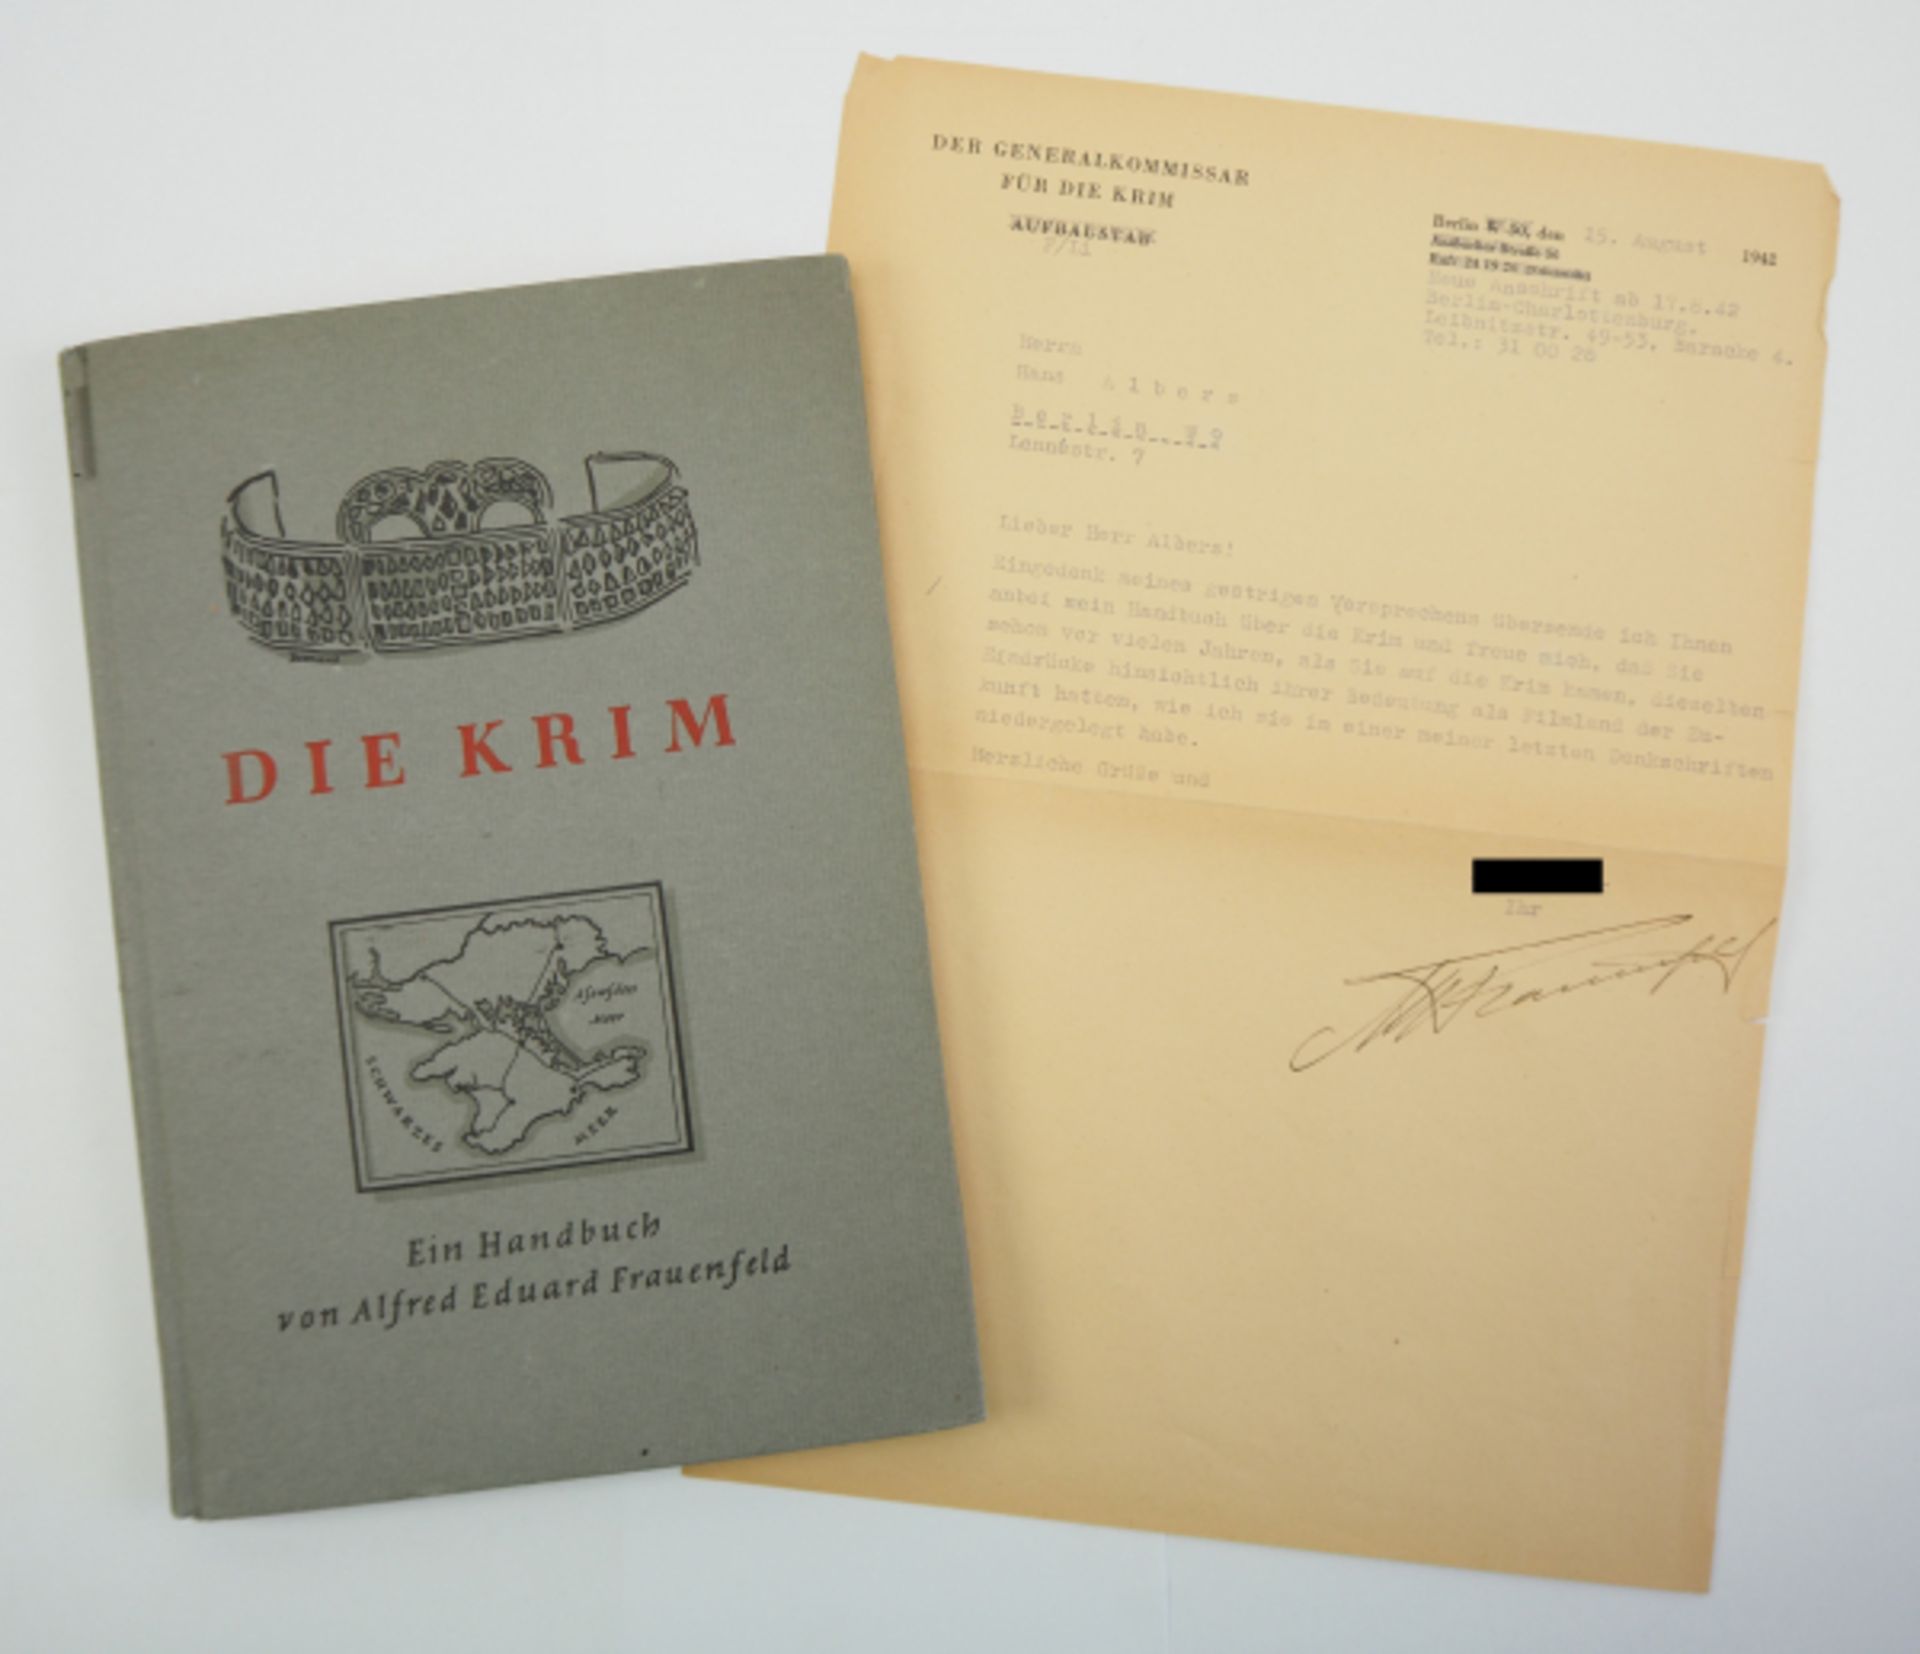 Frauenweld, Alfred E.: Die Krim - Exemplar von Hans Albers.Die Krim. Handbuch. Nur für den